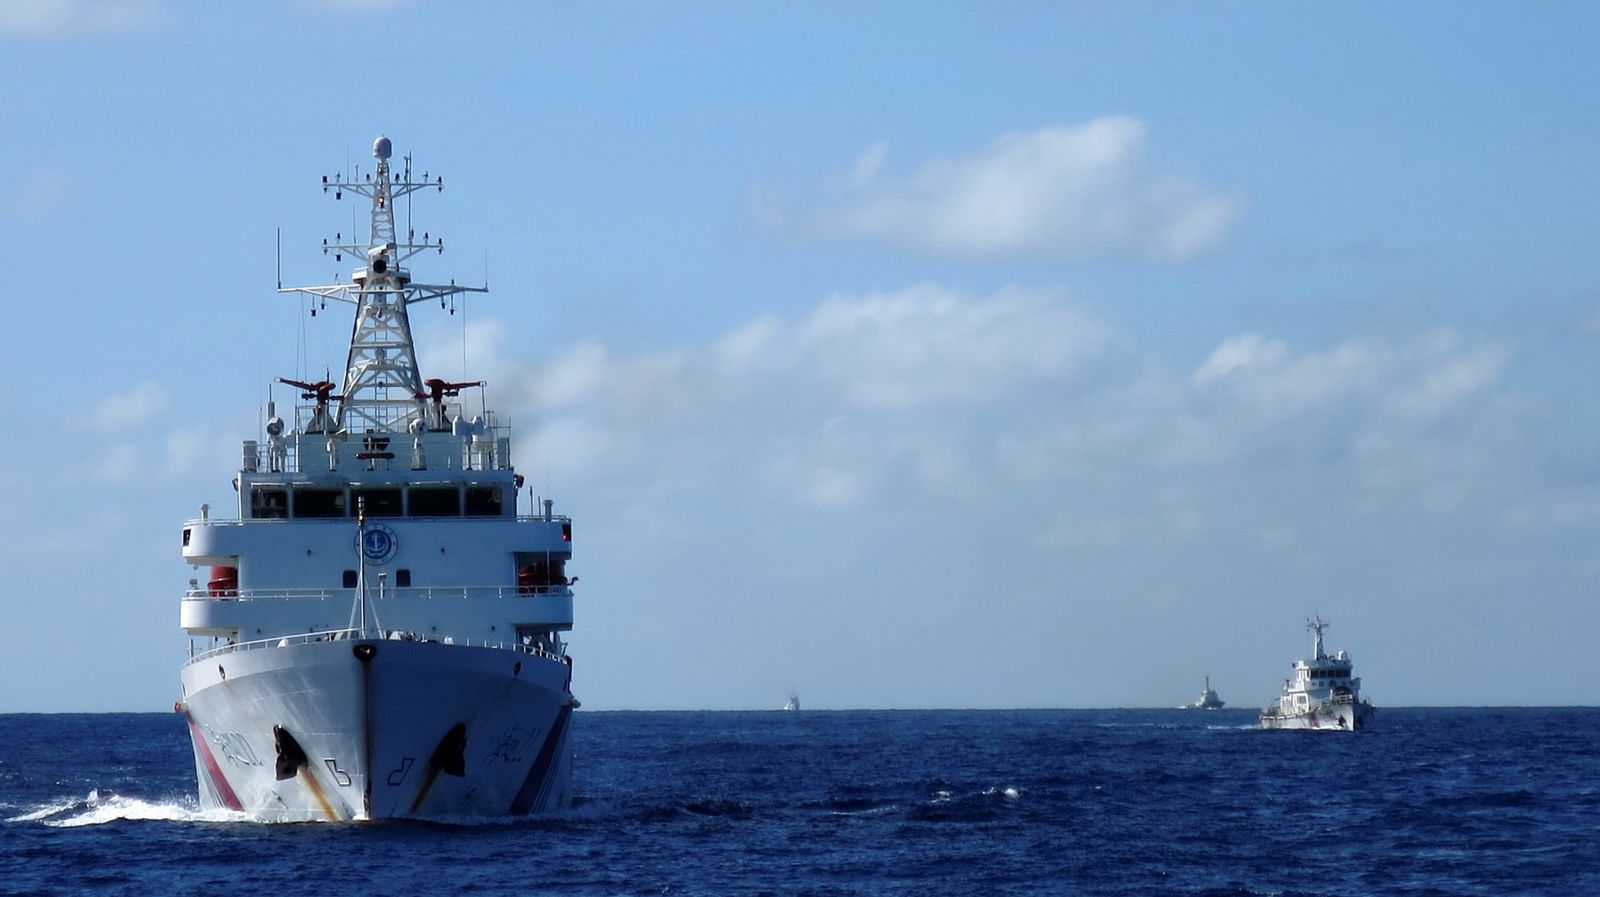 سفينة لخفر السواحل الصيني تطارد سفناً لخفر السواحل الفيتنامي في بحر الصين الجنوبي - 15 يوليو 2014 - REUTERS